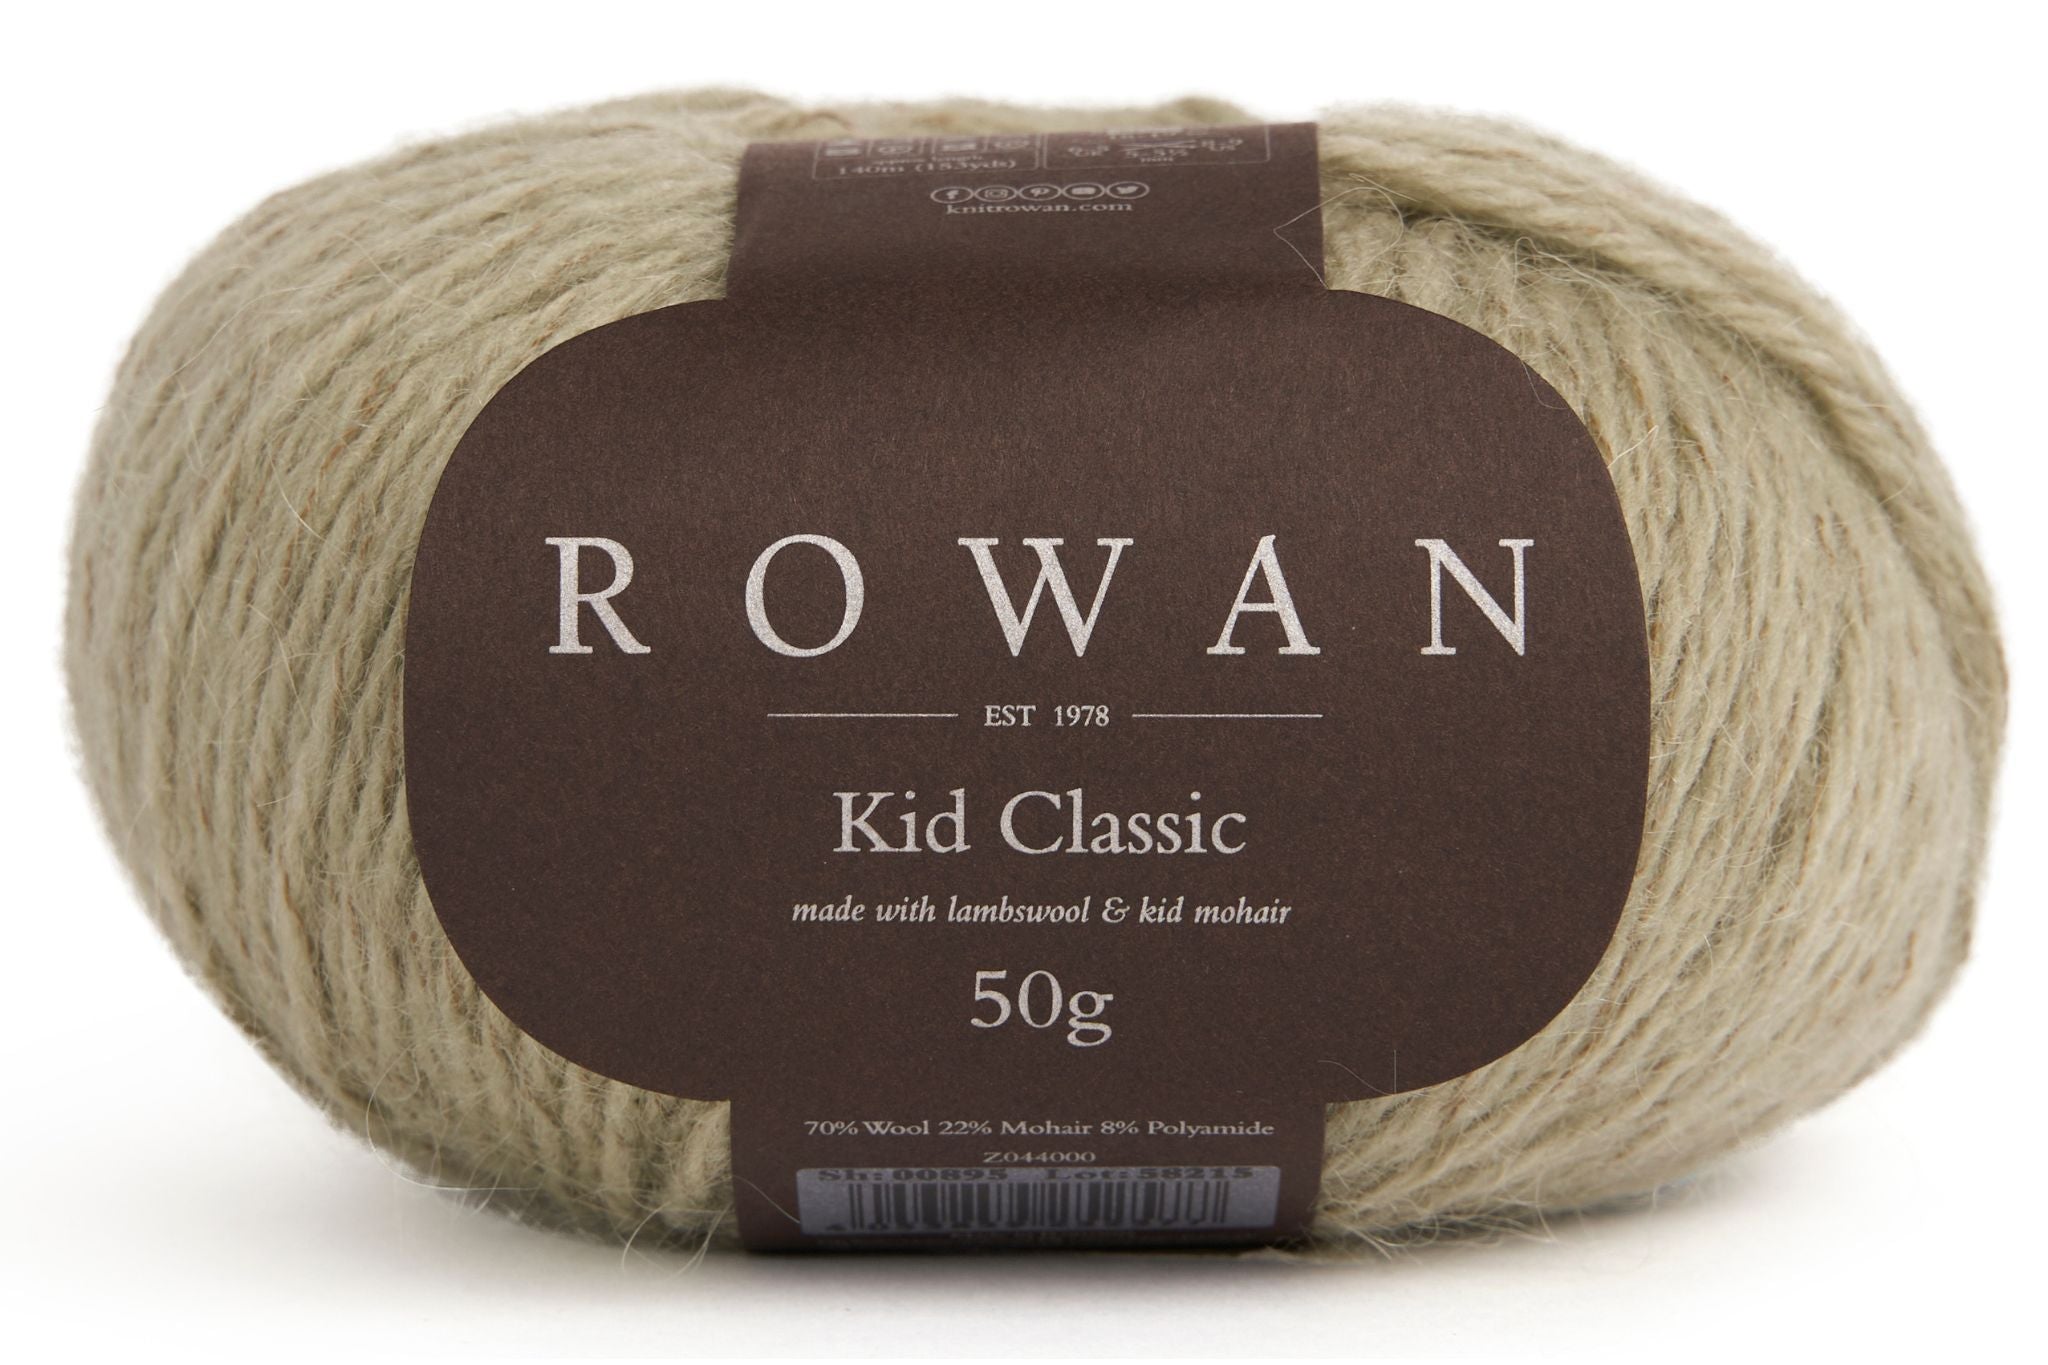 Rowan Kid Classic in Peppermint 918